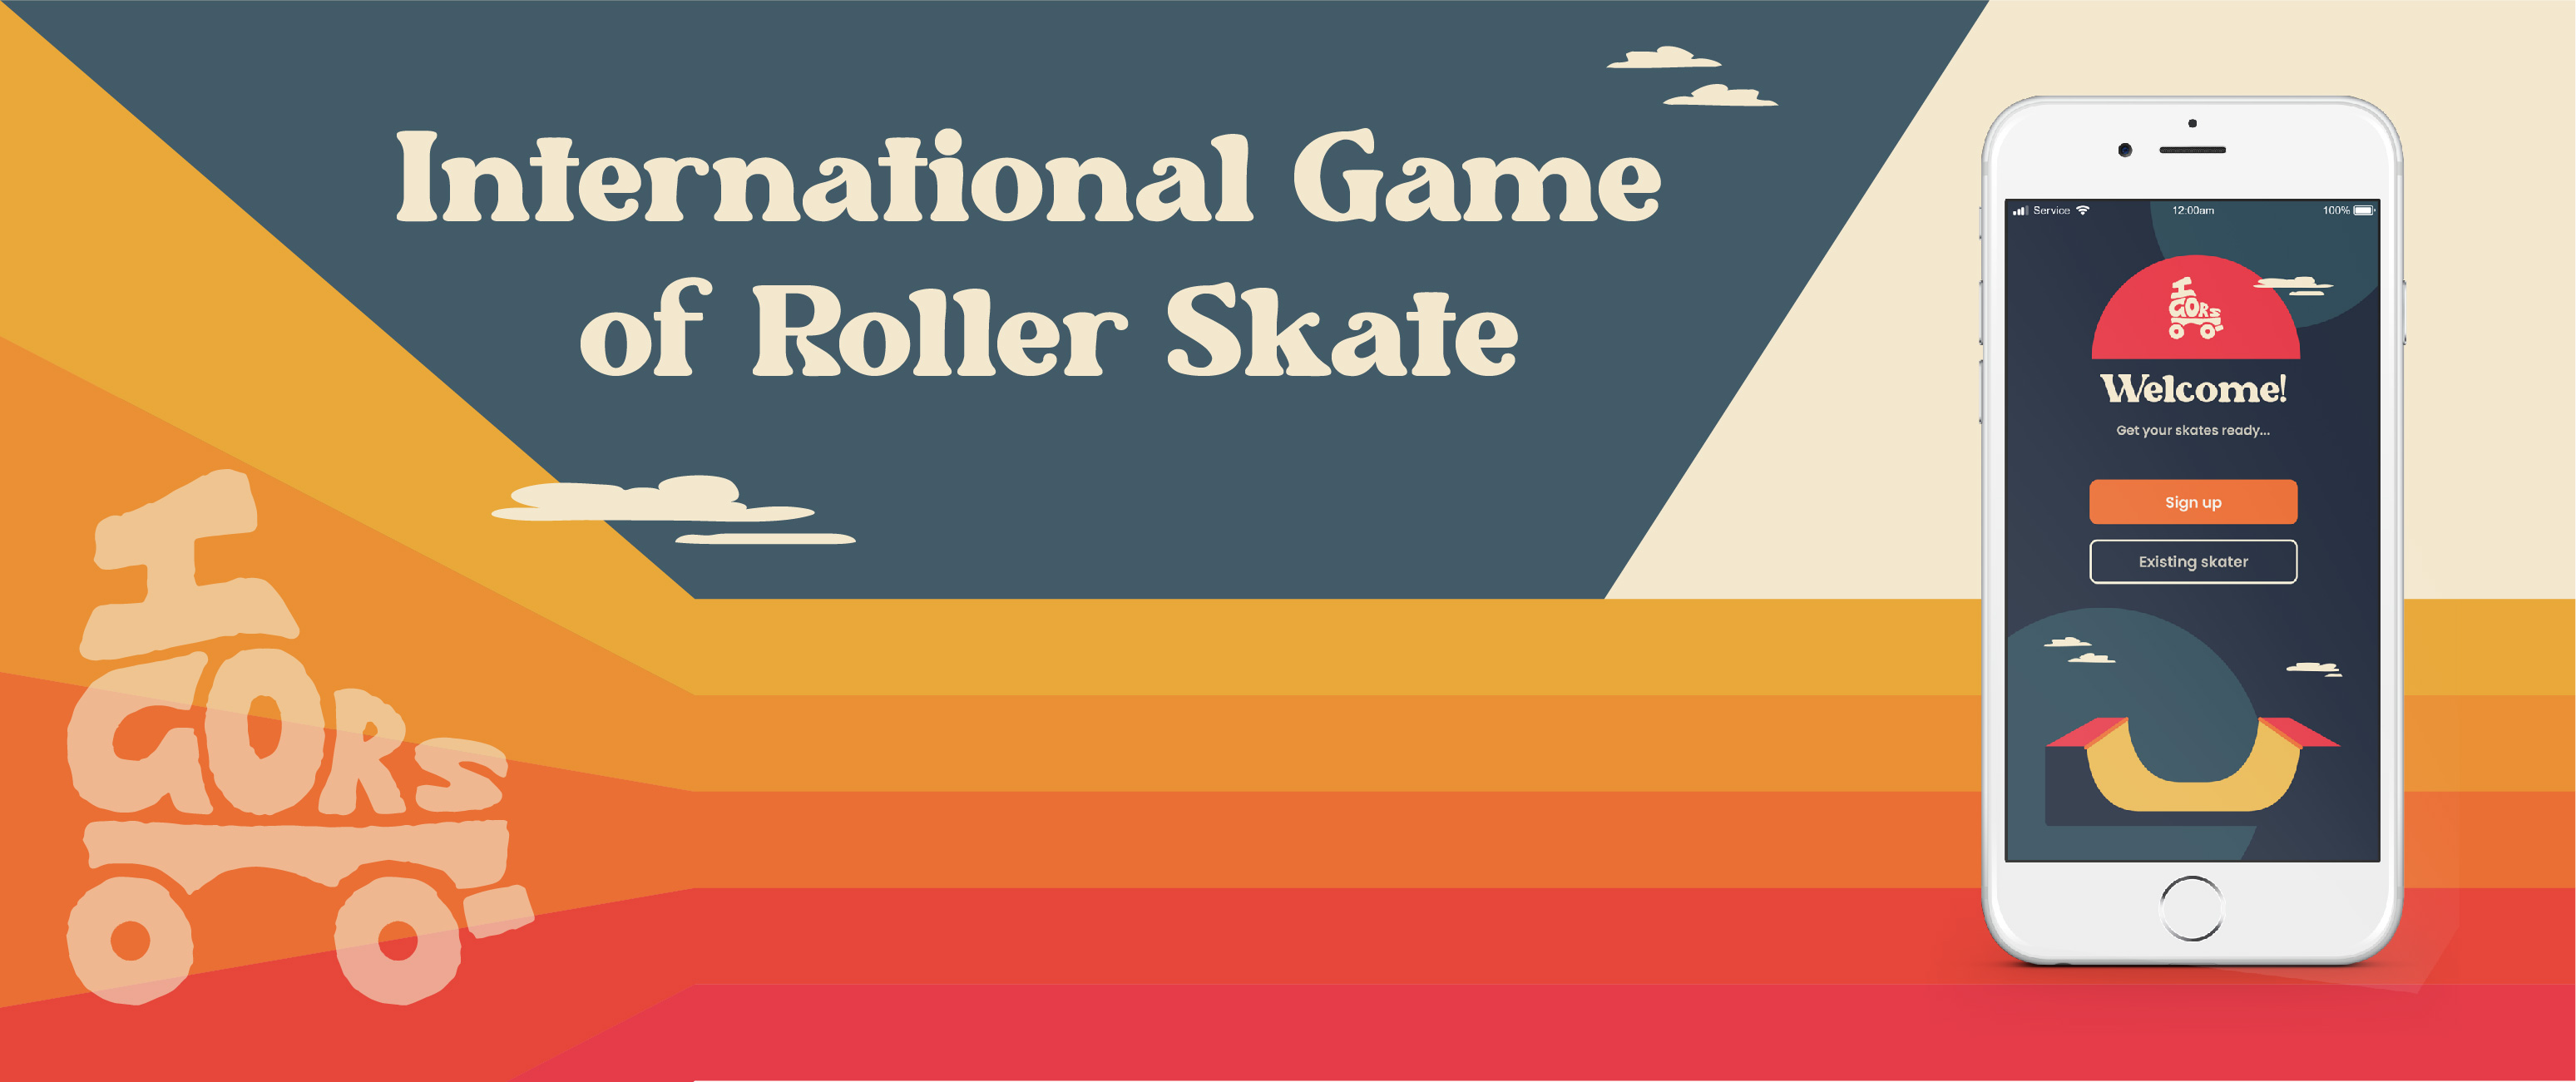 International Game of Roller Skate (IGORS)